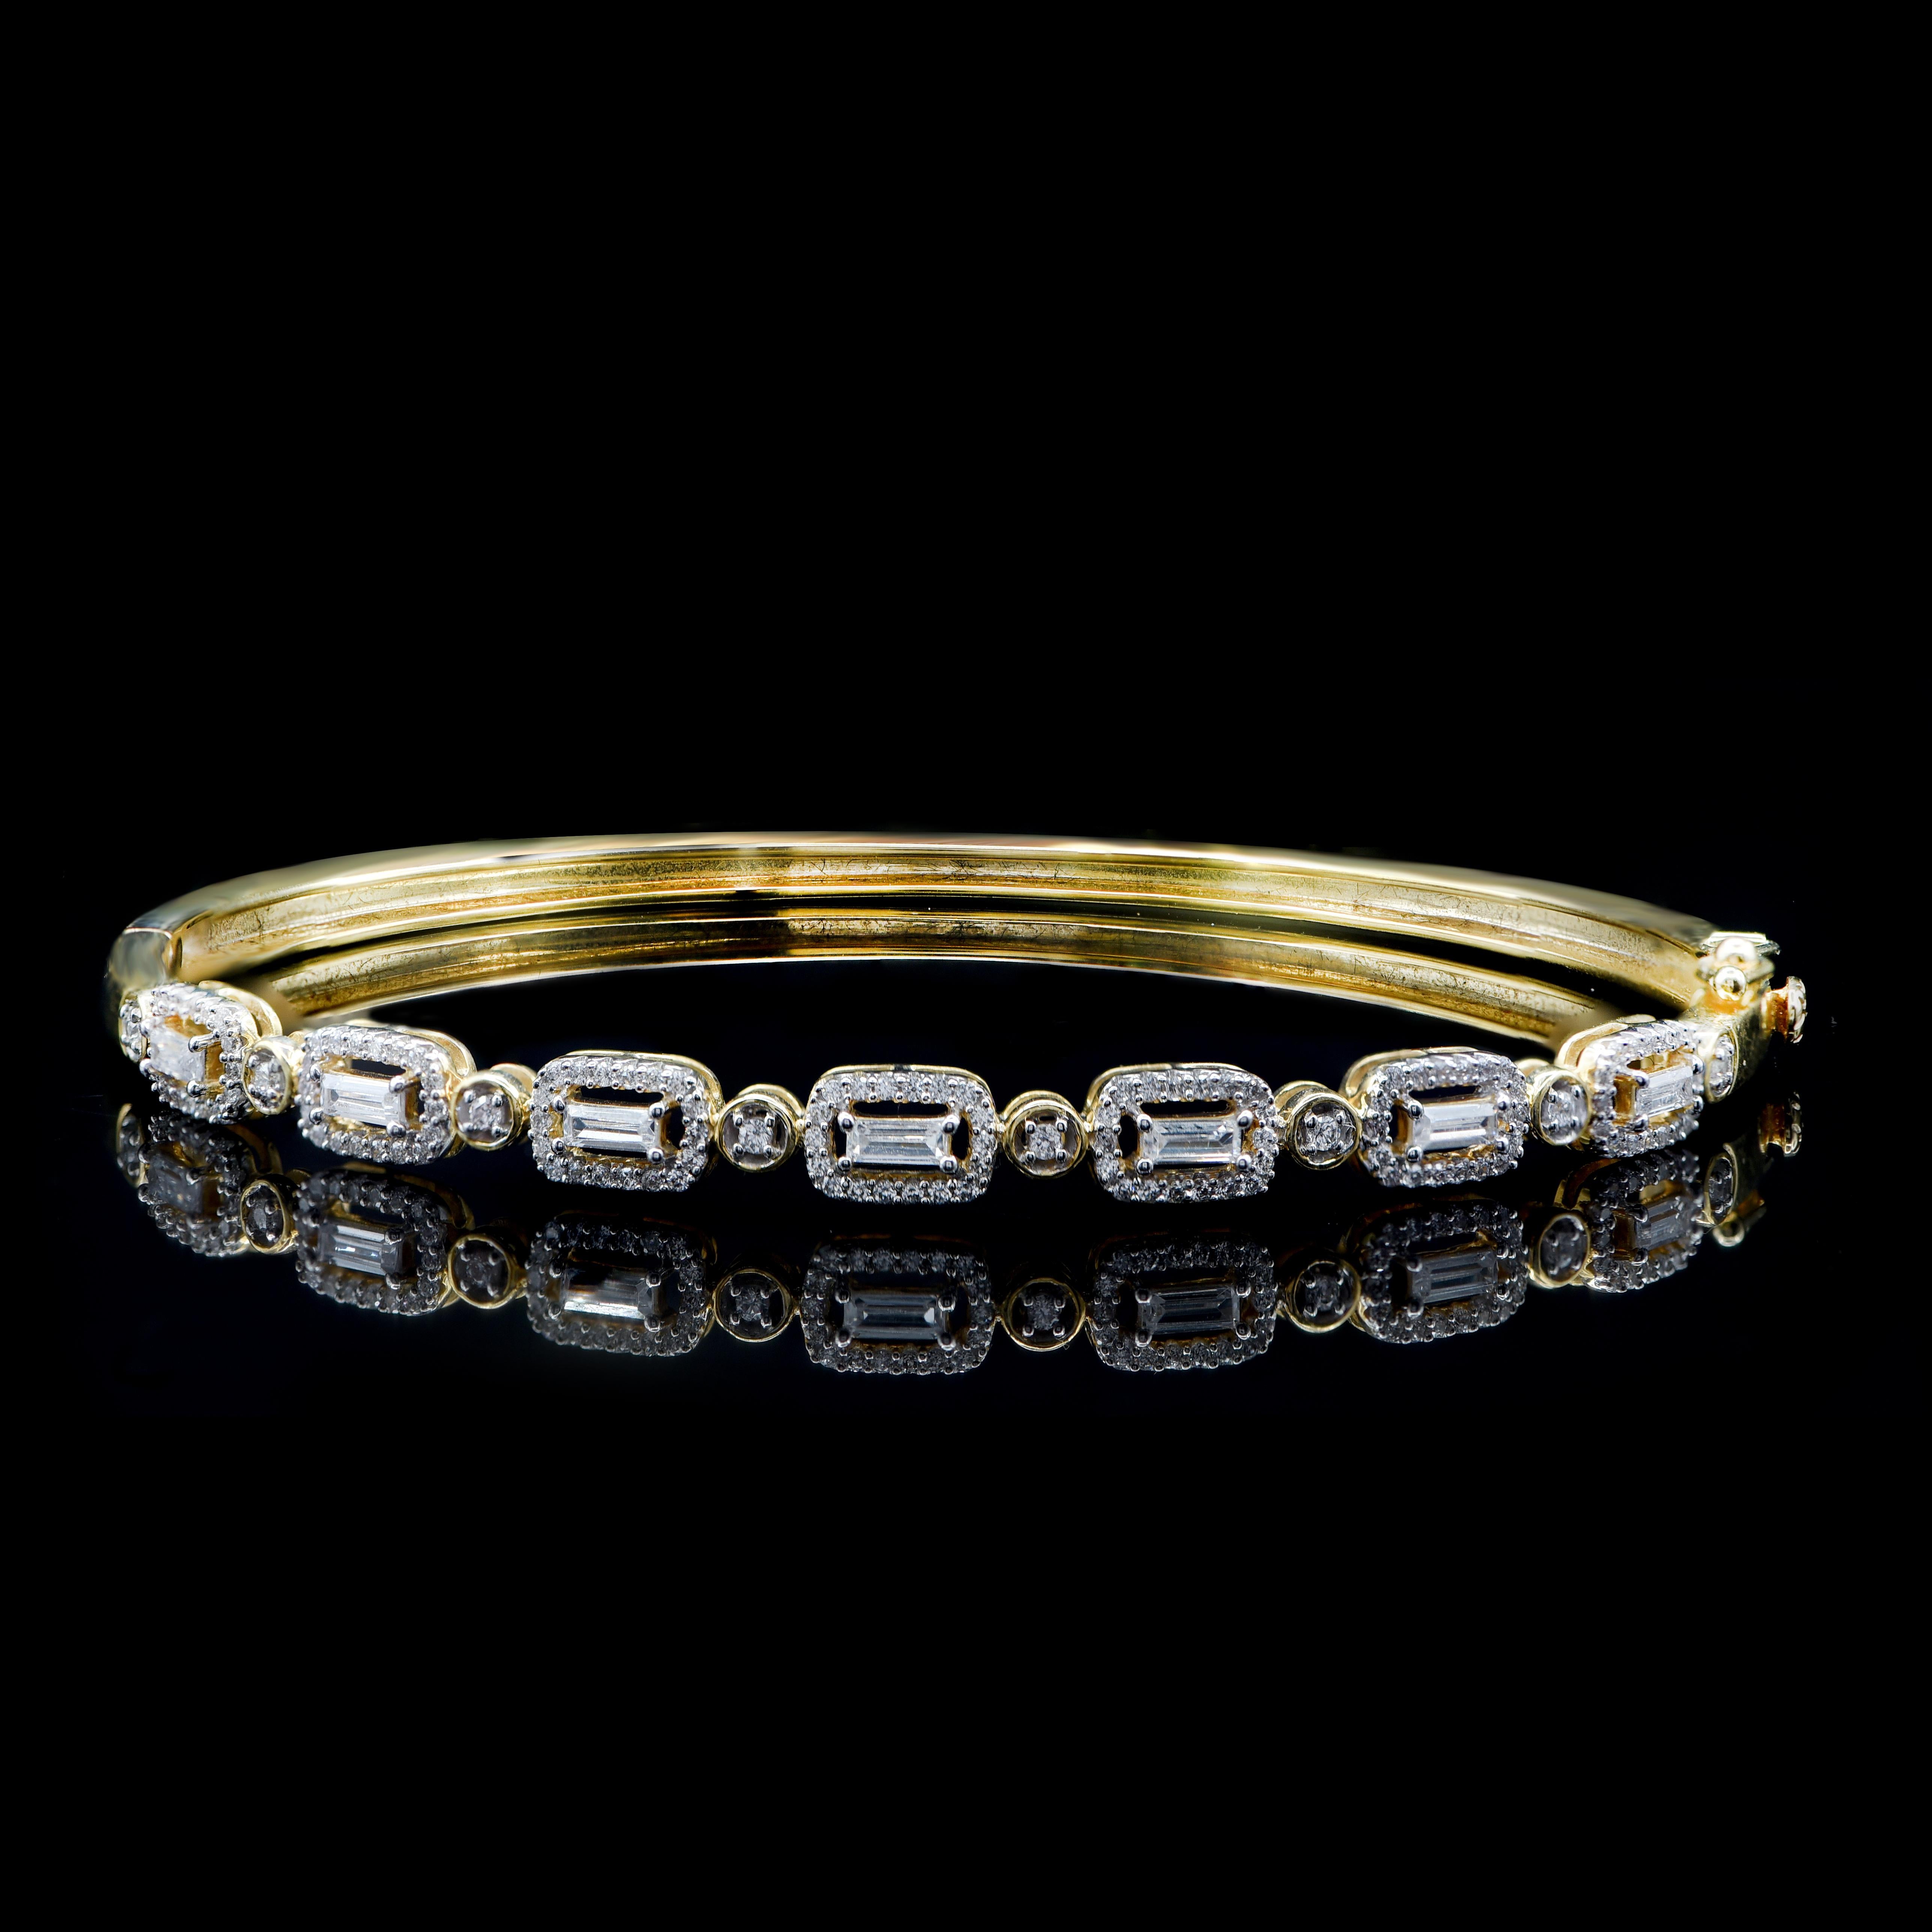 Dieses klassische Design mit 134 Diamanten im Brillantschliff und 7 natürlichen Diamanten im Baguetteschliff ist elegant in stapelbaren Zacken- und Krappenfassungen gefasst und wurde von unseren Experten in 18-karätigem Gelbgold handgefertigt. Die